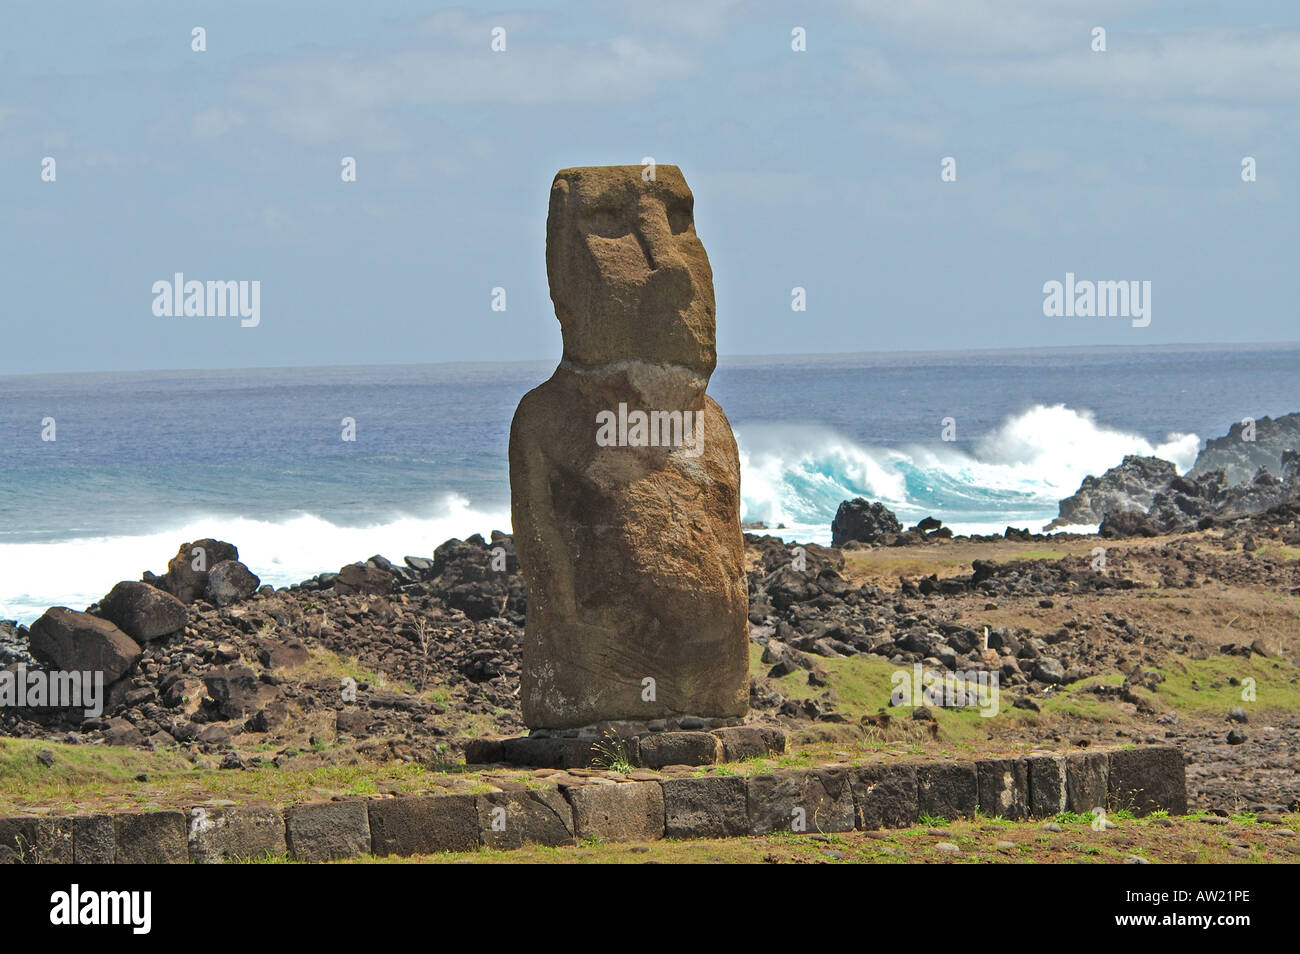 Chile Easter Island Ahu Riata Moai Statue on Platform Stock Photo